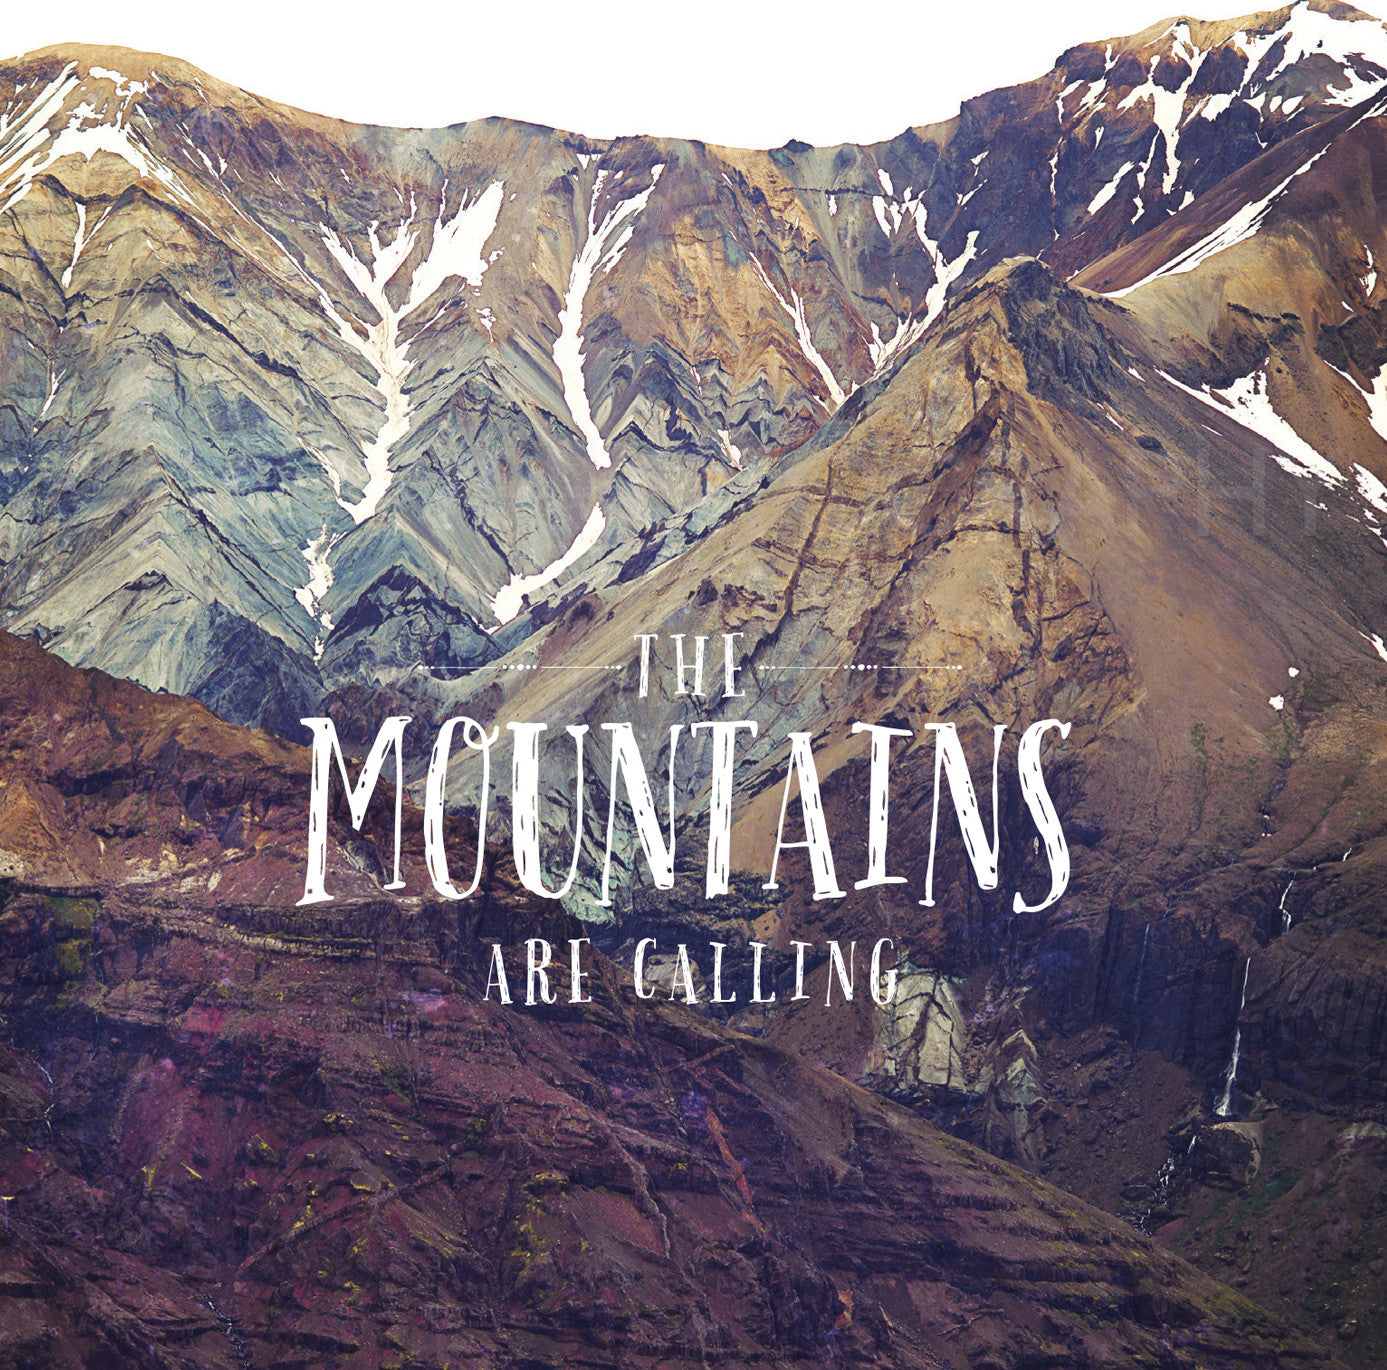 Las montañas están llamando<br> Islandia<br> Archivo de edición limitada<br> Impresión cromogénica de bellas artes